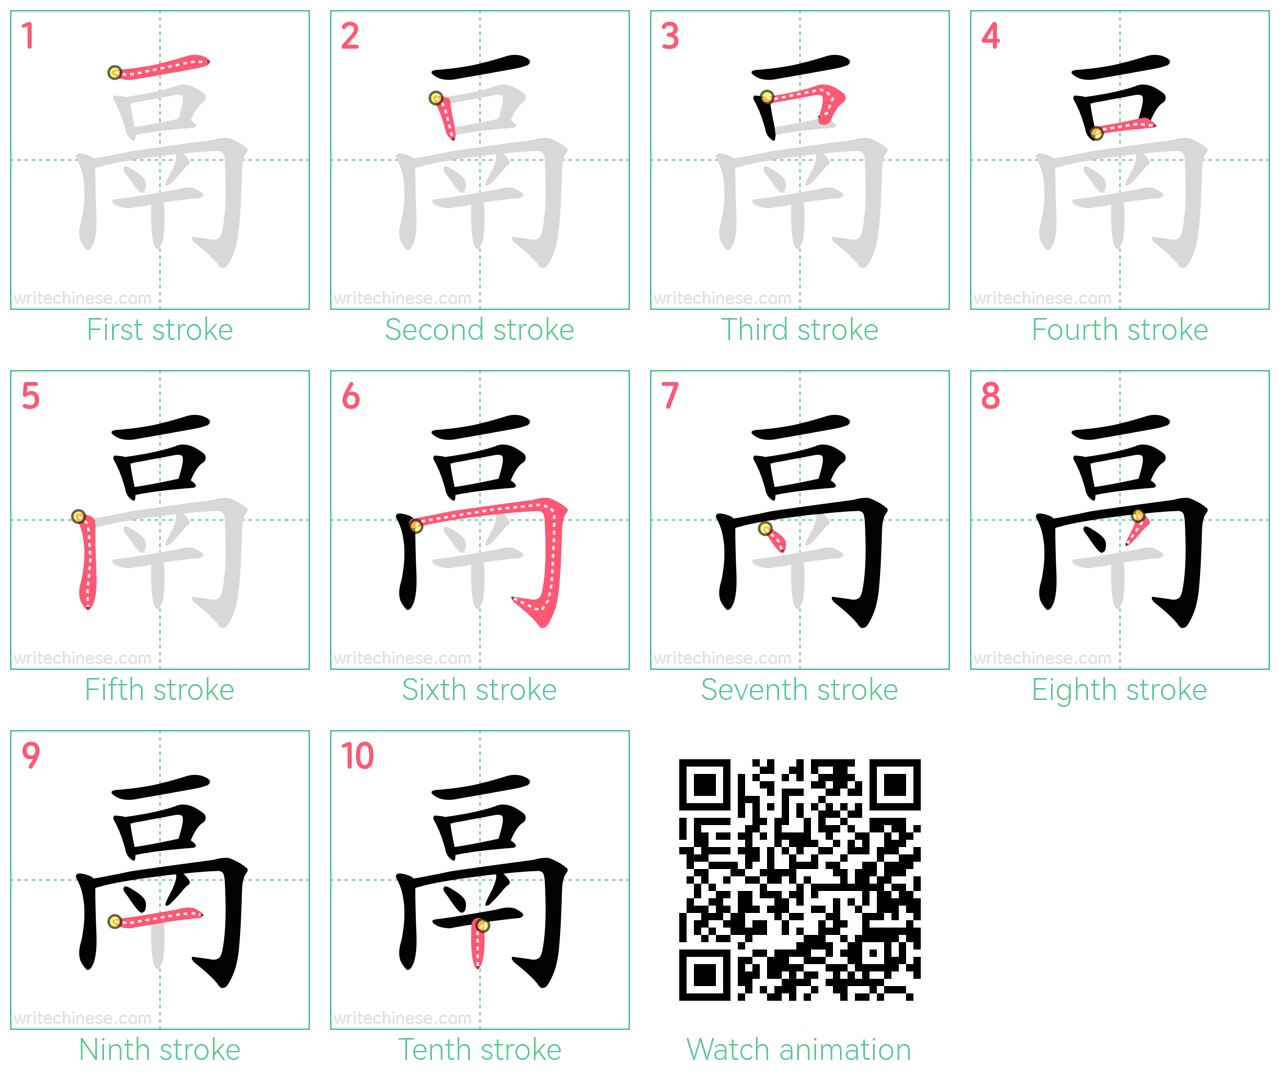 鬲 step-by-step stroke order diagrams